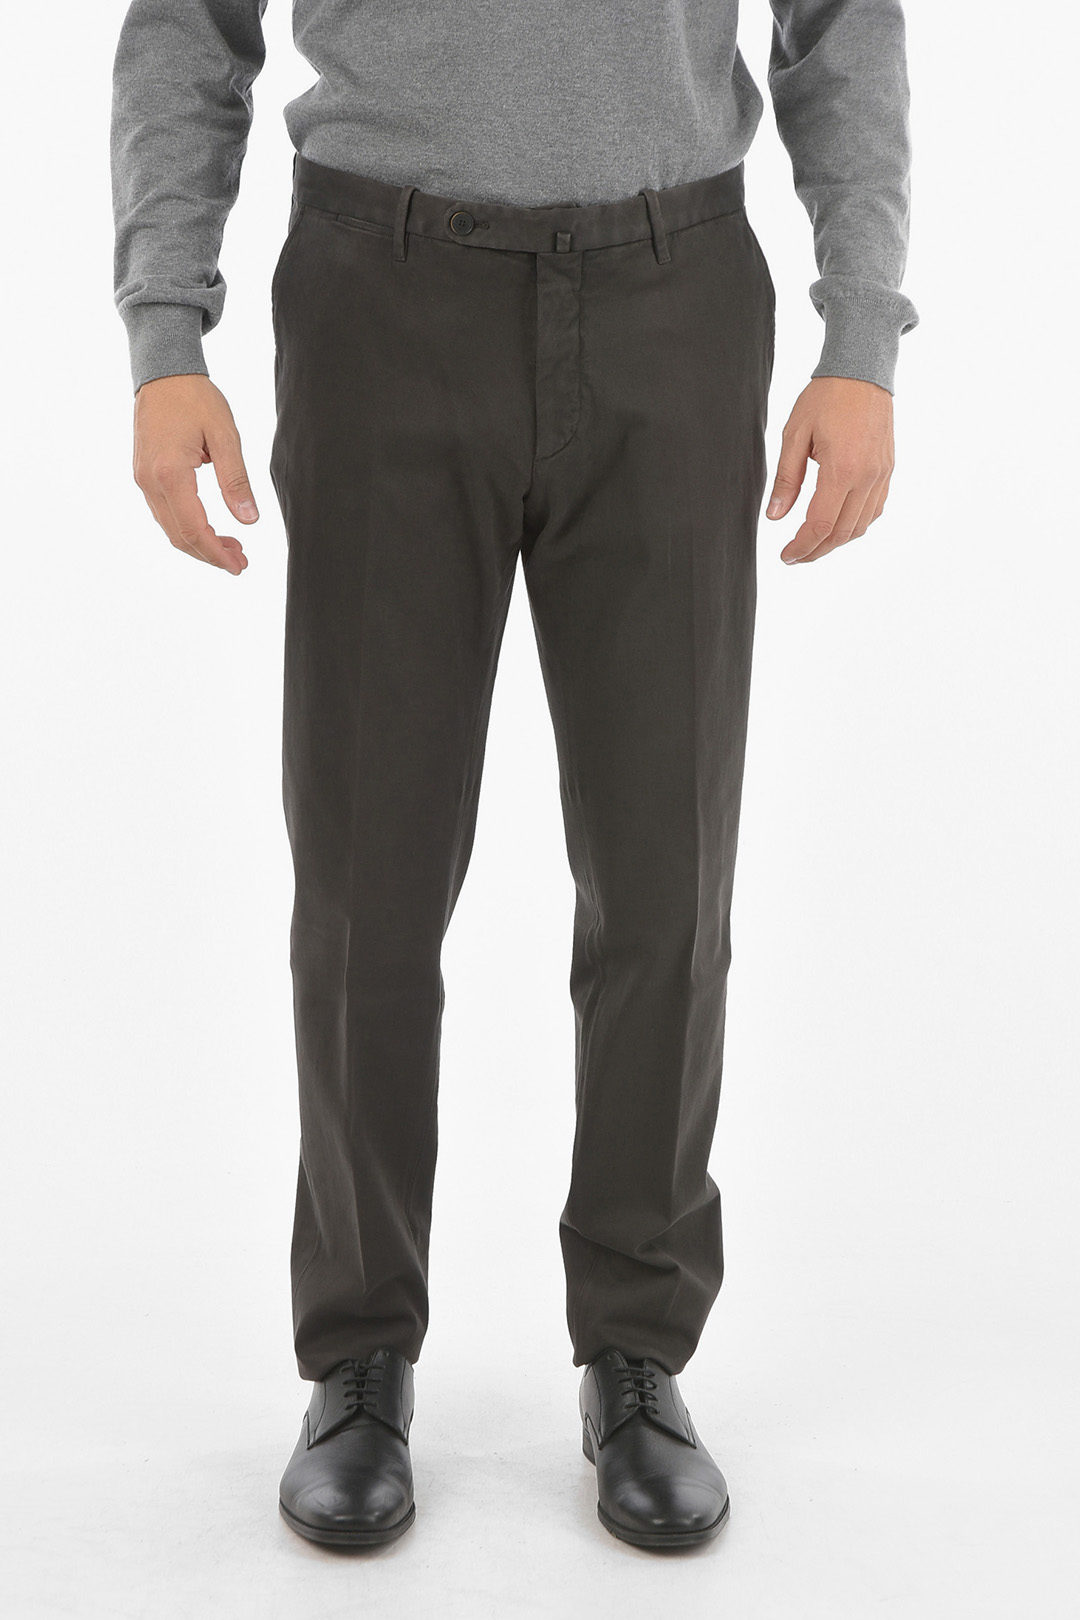 Corneliani Wool ACADEMY Unlined Pants men - Glamood Outlet